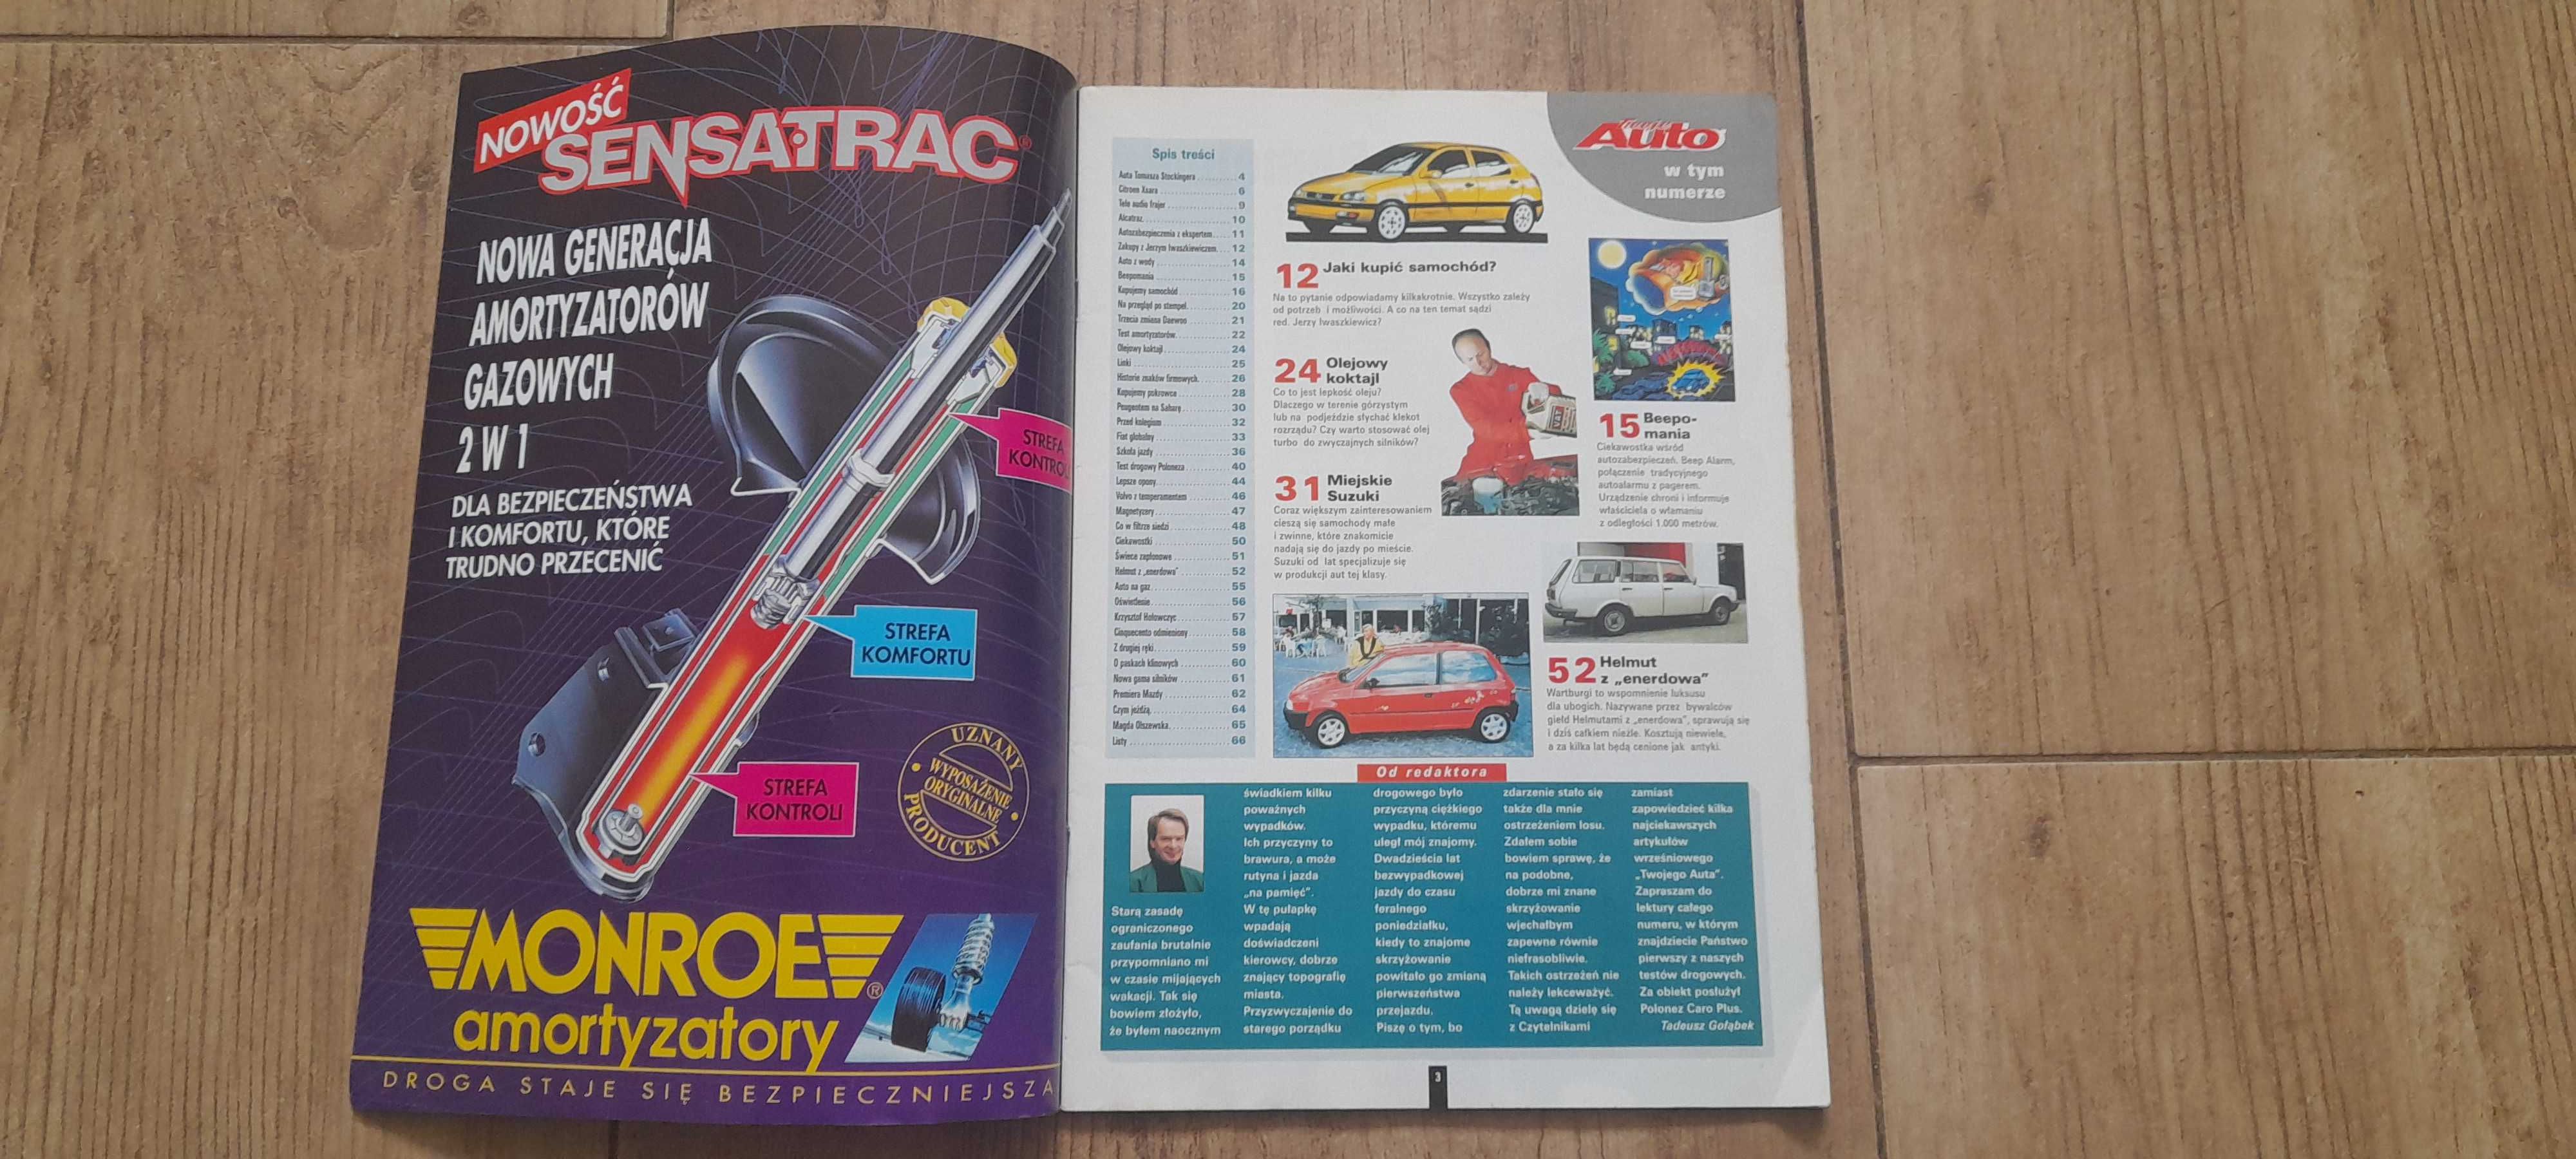 Miesięcznik "Twoje Auto" - nr 7 z września 1997 roku